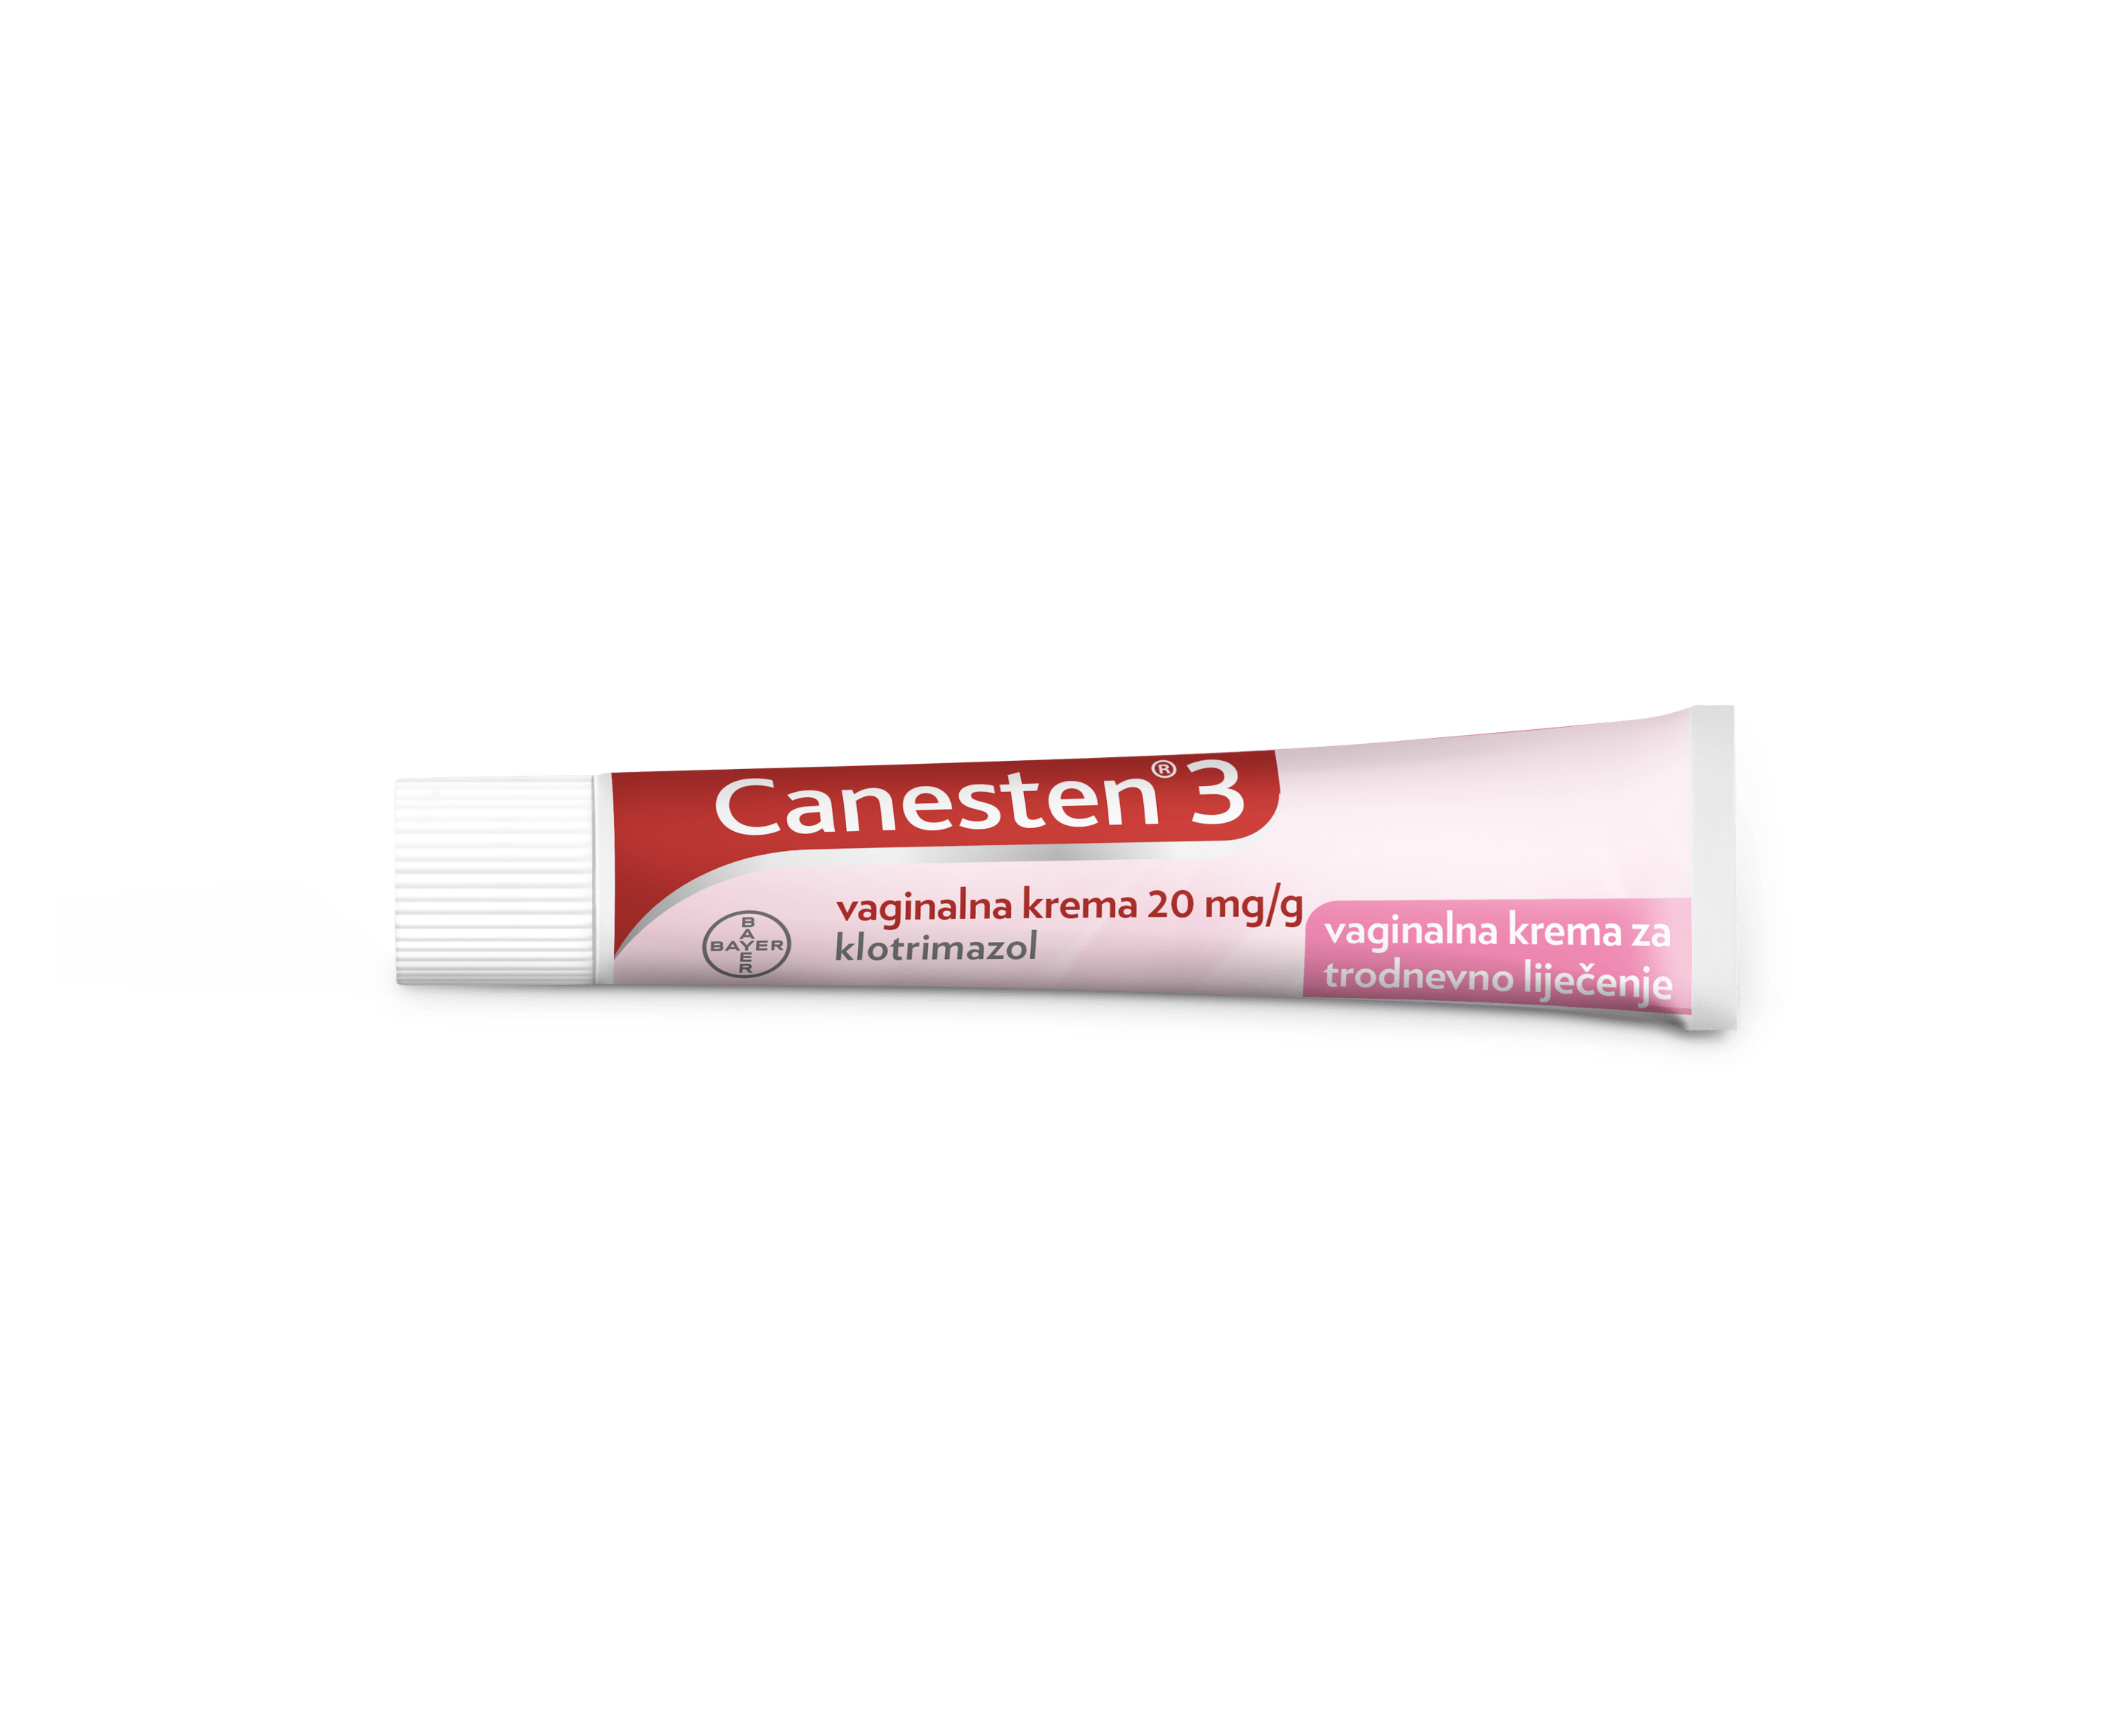 Canesten®3 vaginalna krema tuba